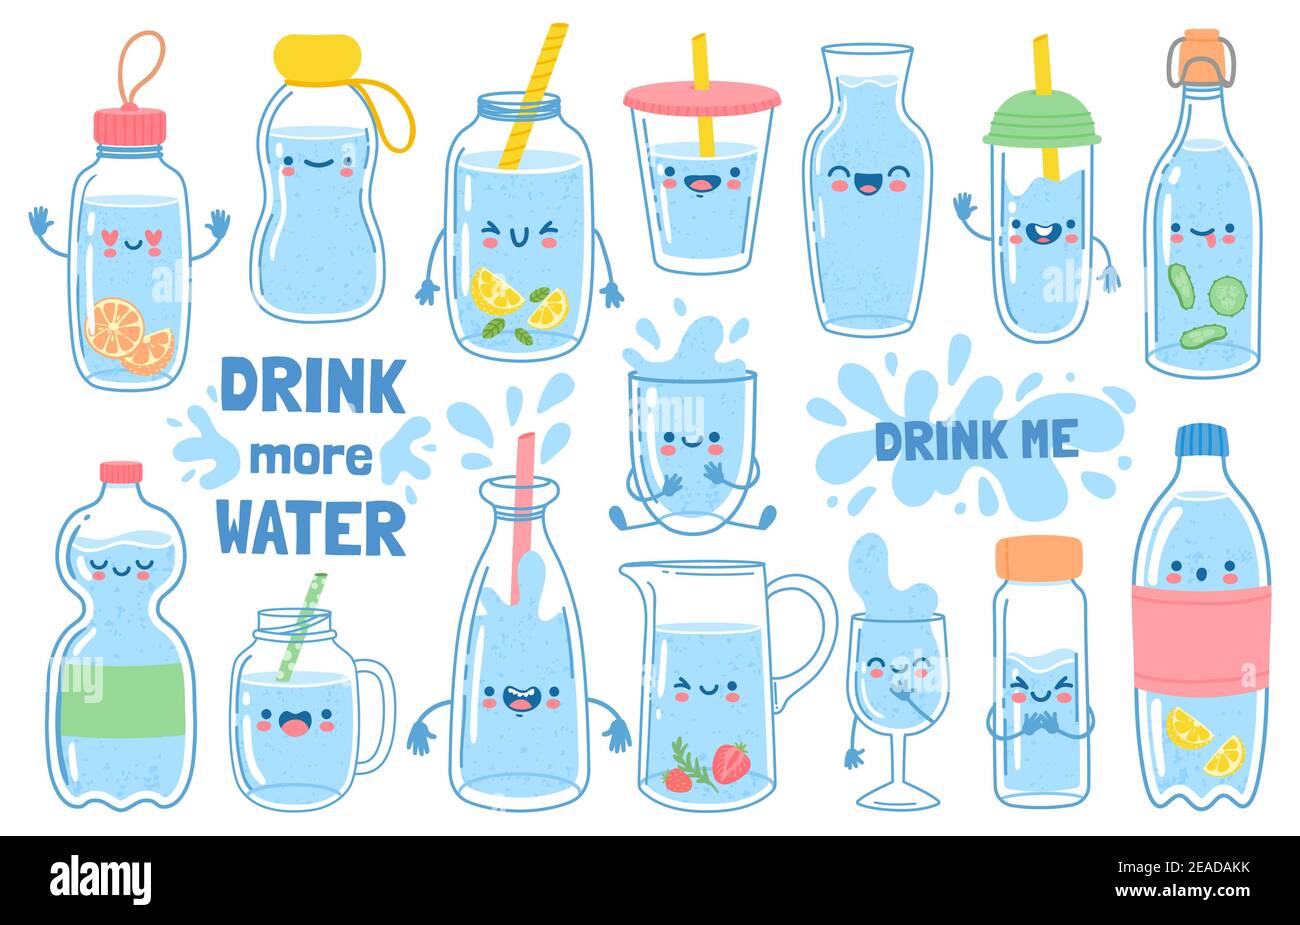 Trinken Sie mehr Wasser. Flaschen, Glas und Krug mit lustigen Comic-Gesichtern. Detox Wasser mit Zitrone und Minze. Motivation für die Gesundheit Gewohnheit Vektor-Set Stock Vektor